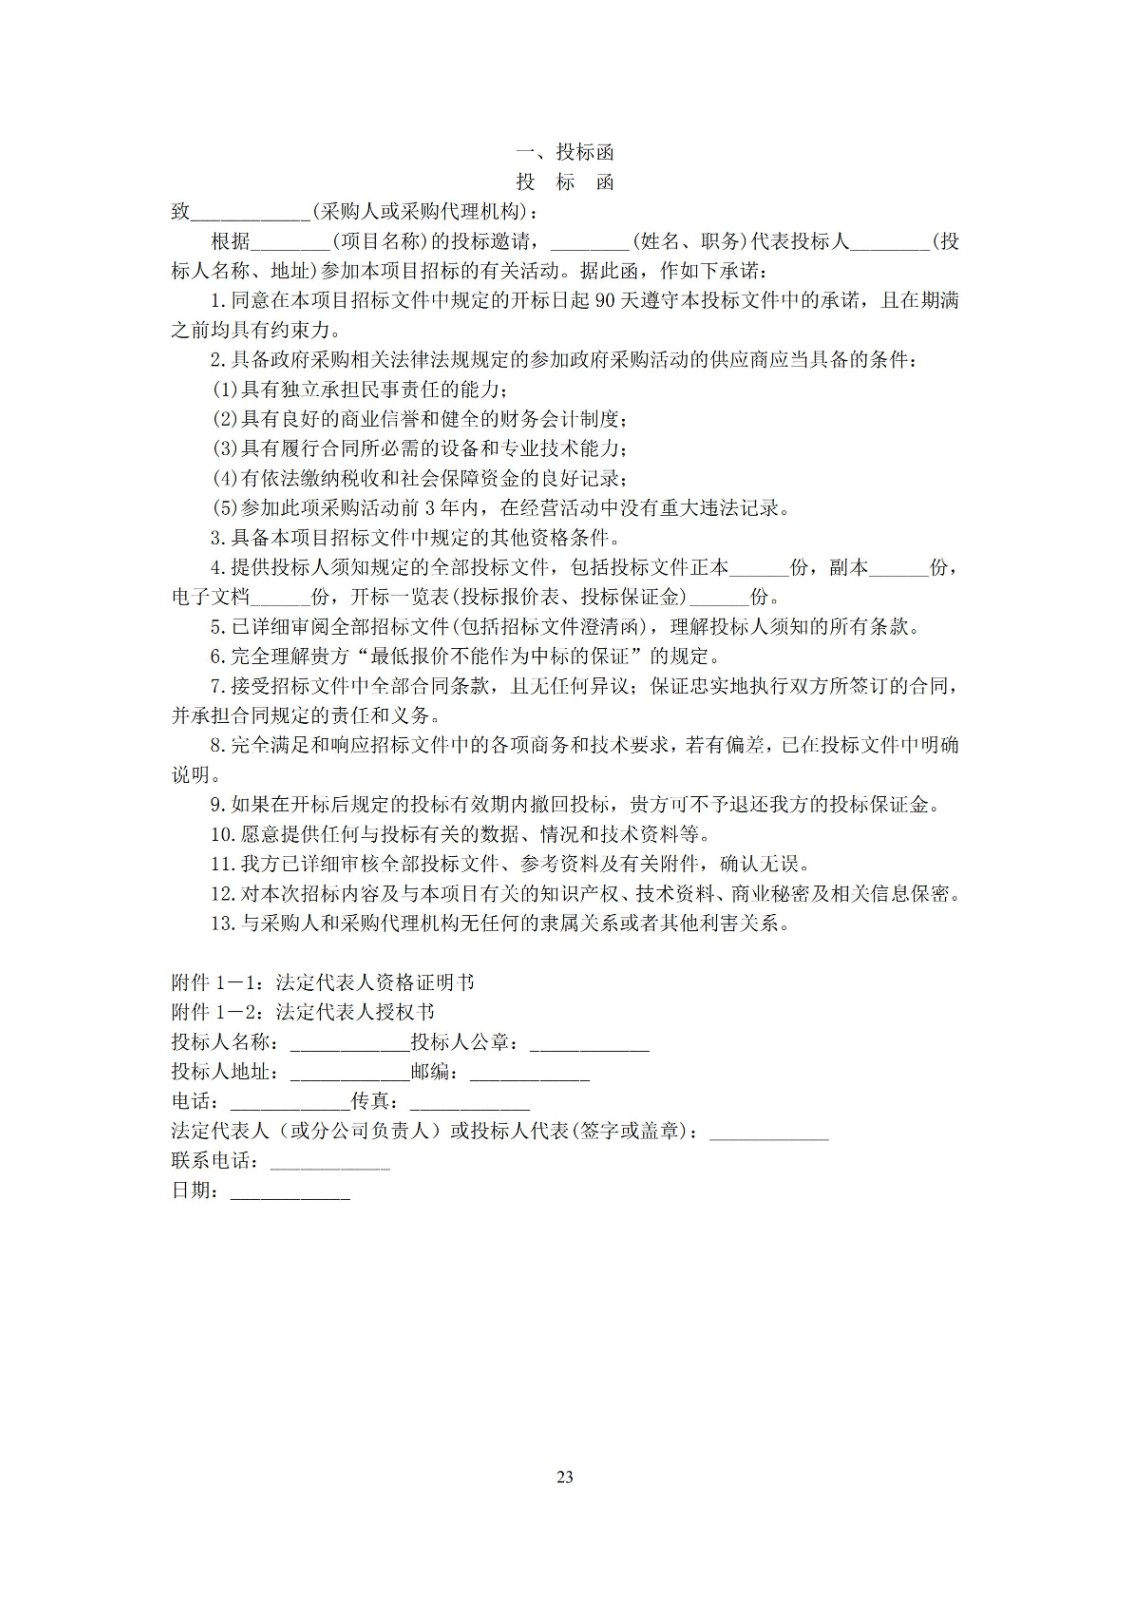 2022年江西省大众跆拳道系列赛电子护具租赁和竞赛系统服务项目招标文件_22.jpg